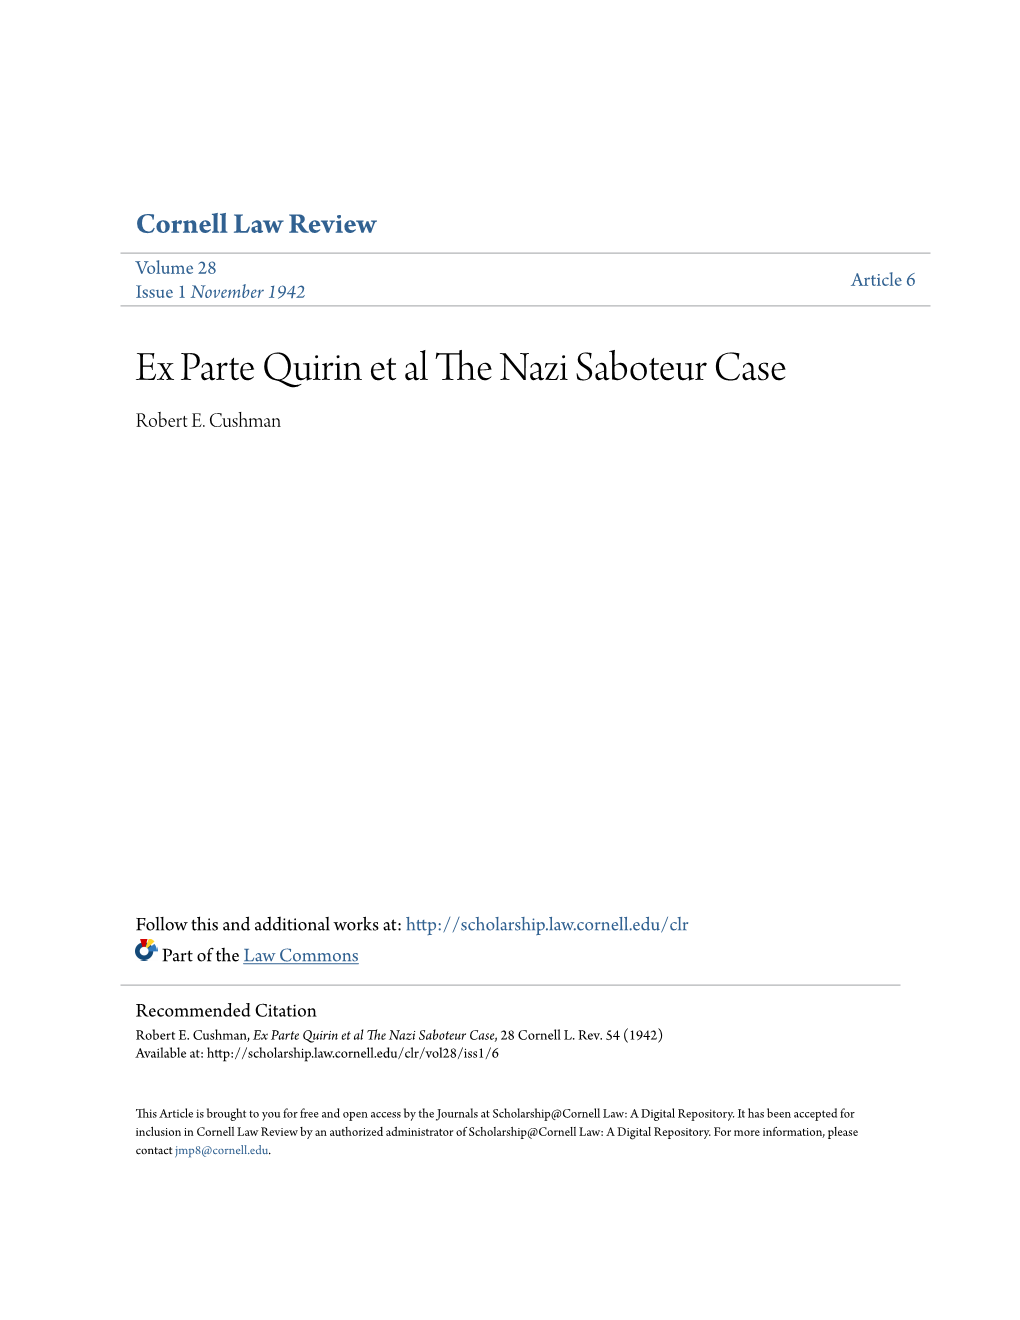 Ex Parte Quirin Et Al the Nazi Saboteur Case, 28 Cornell L